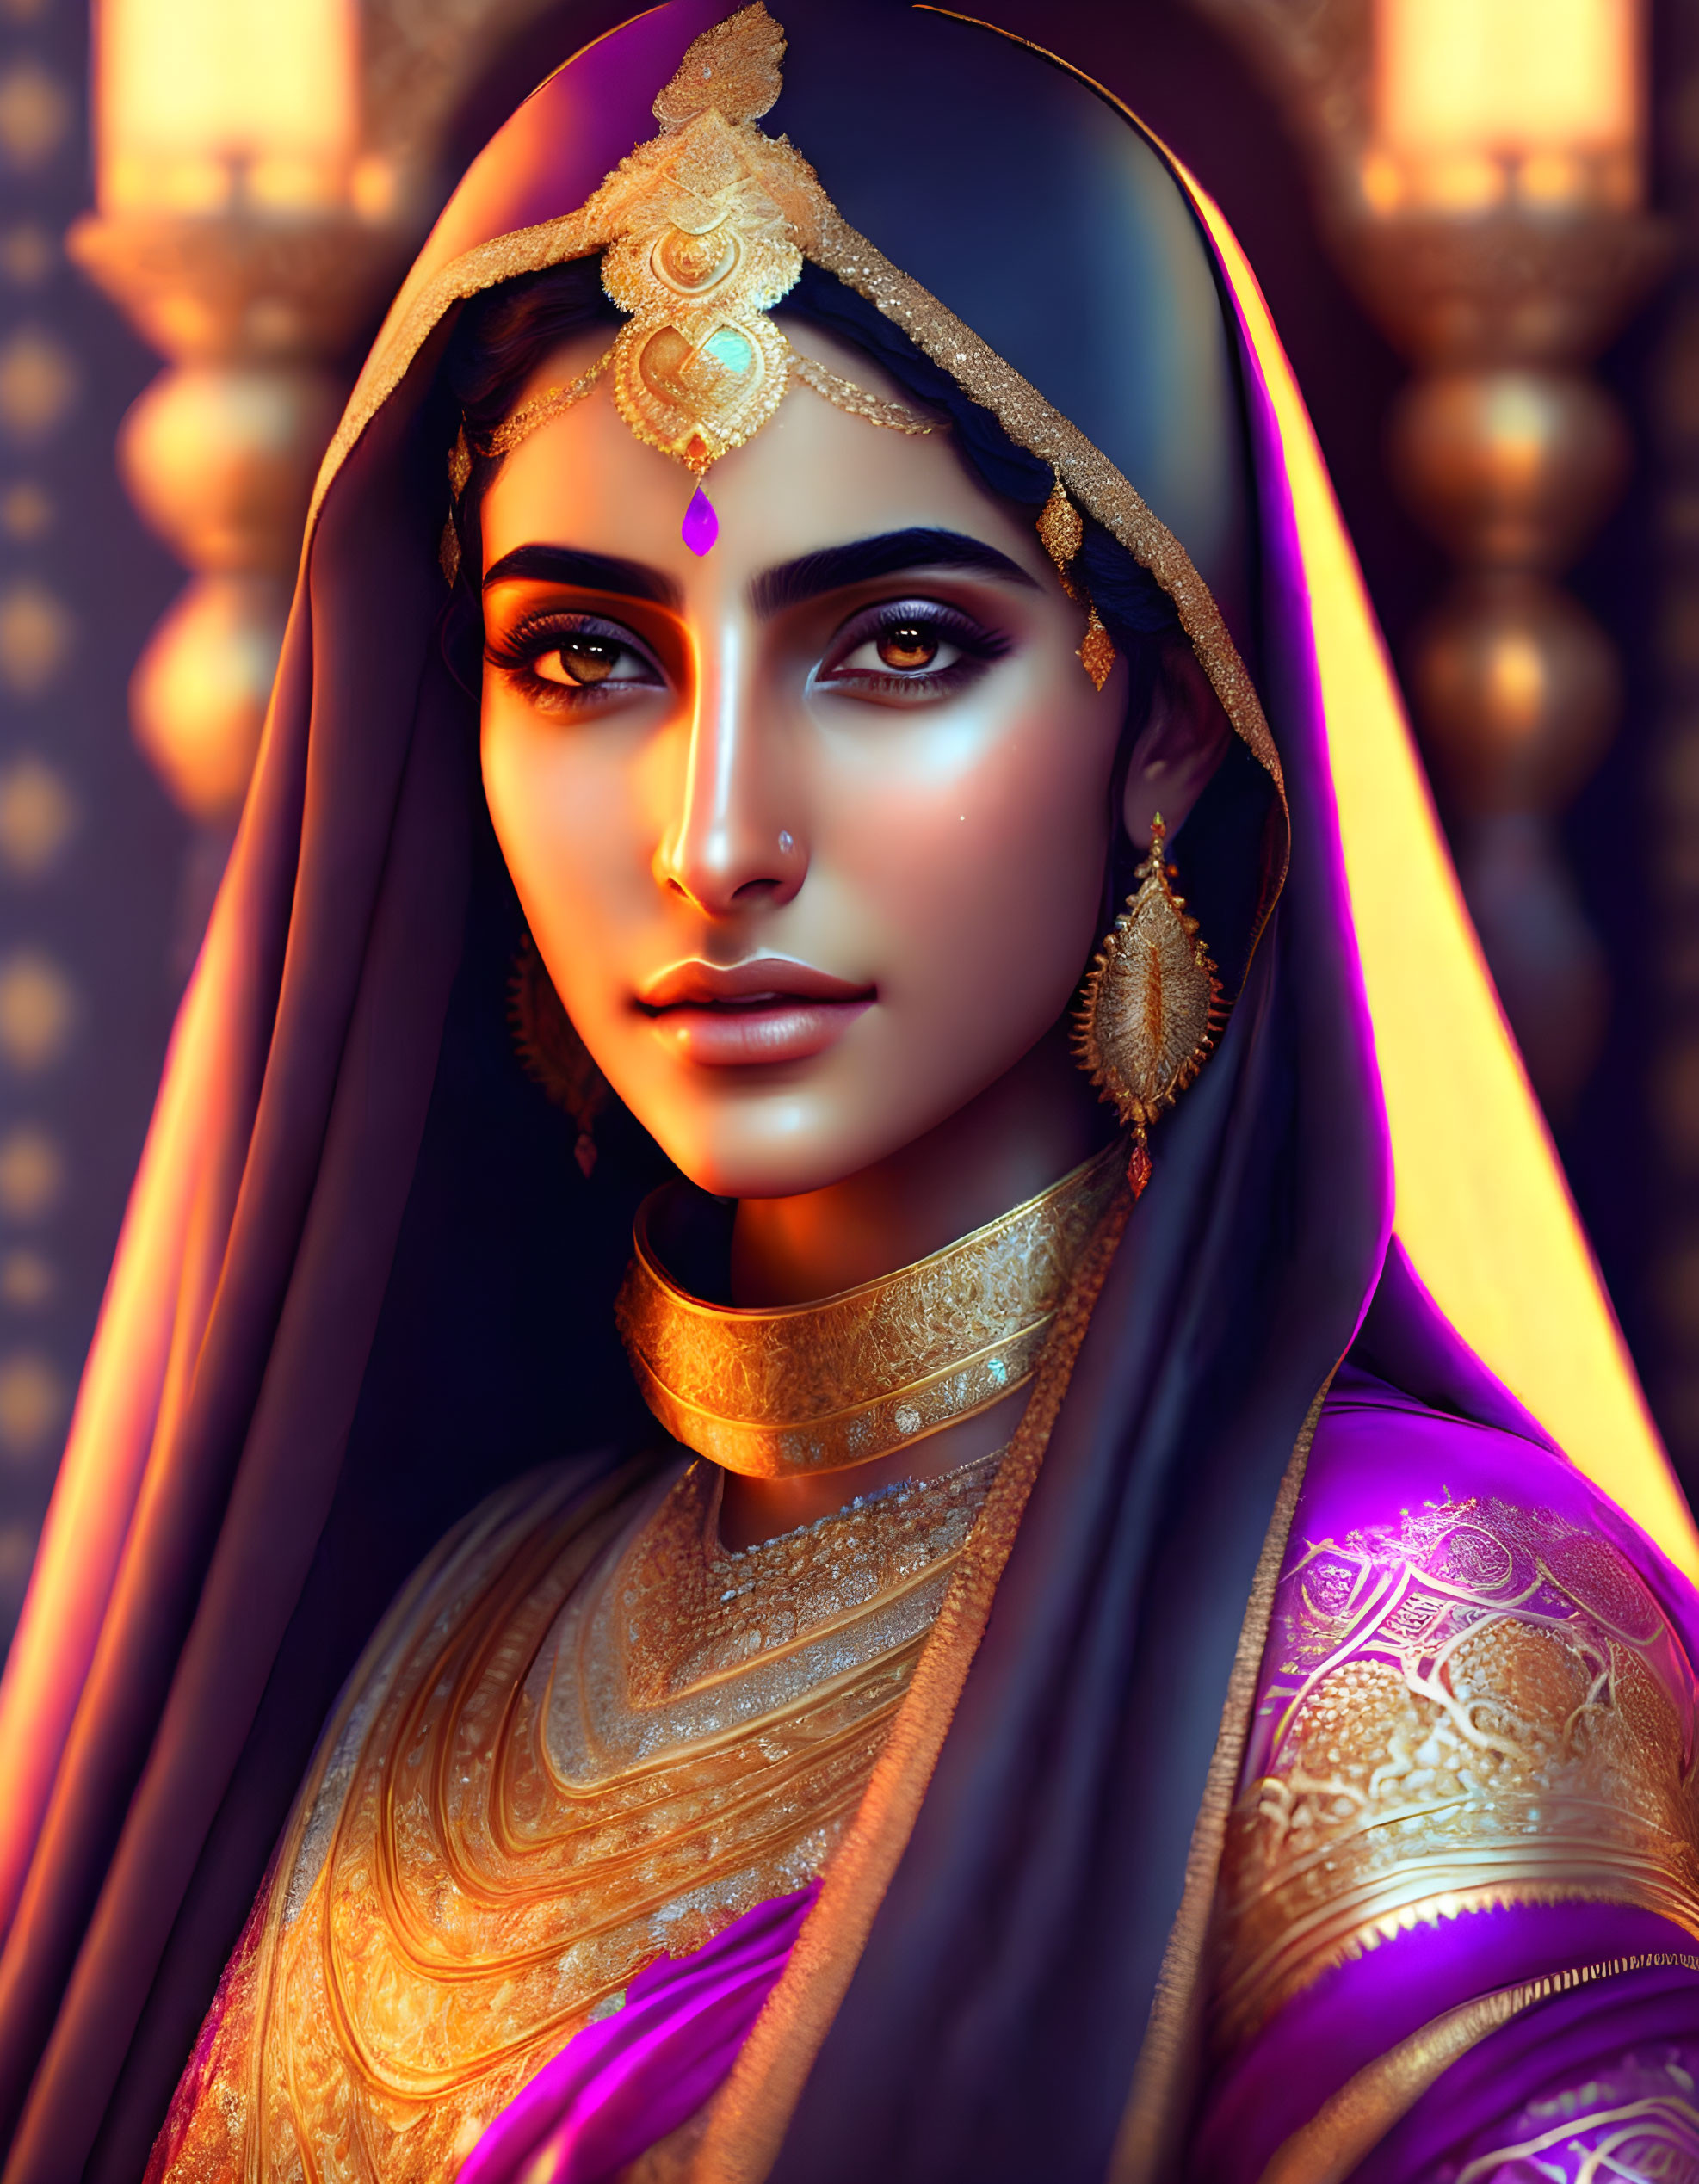  A beautiful:Arab Princess